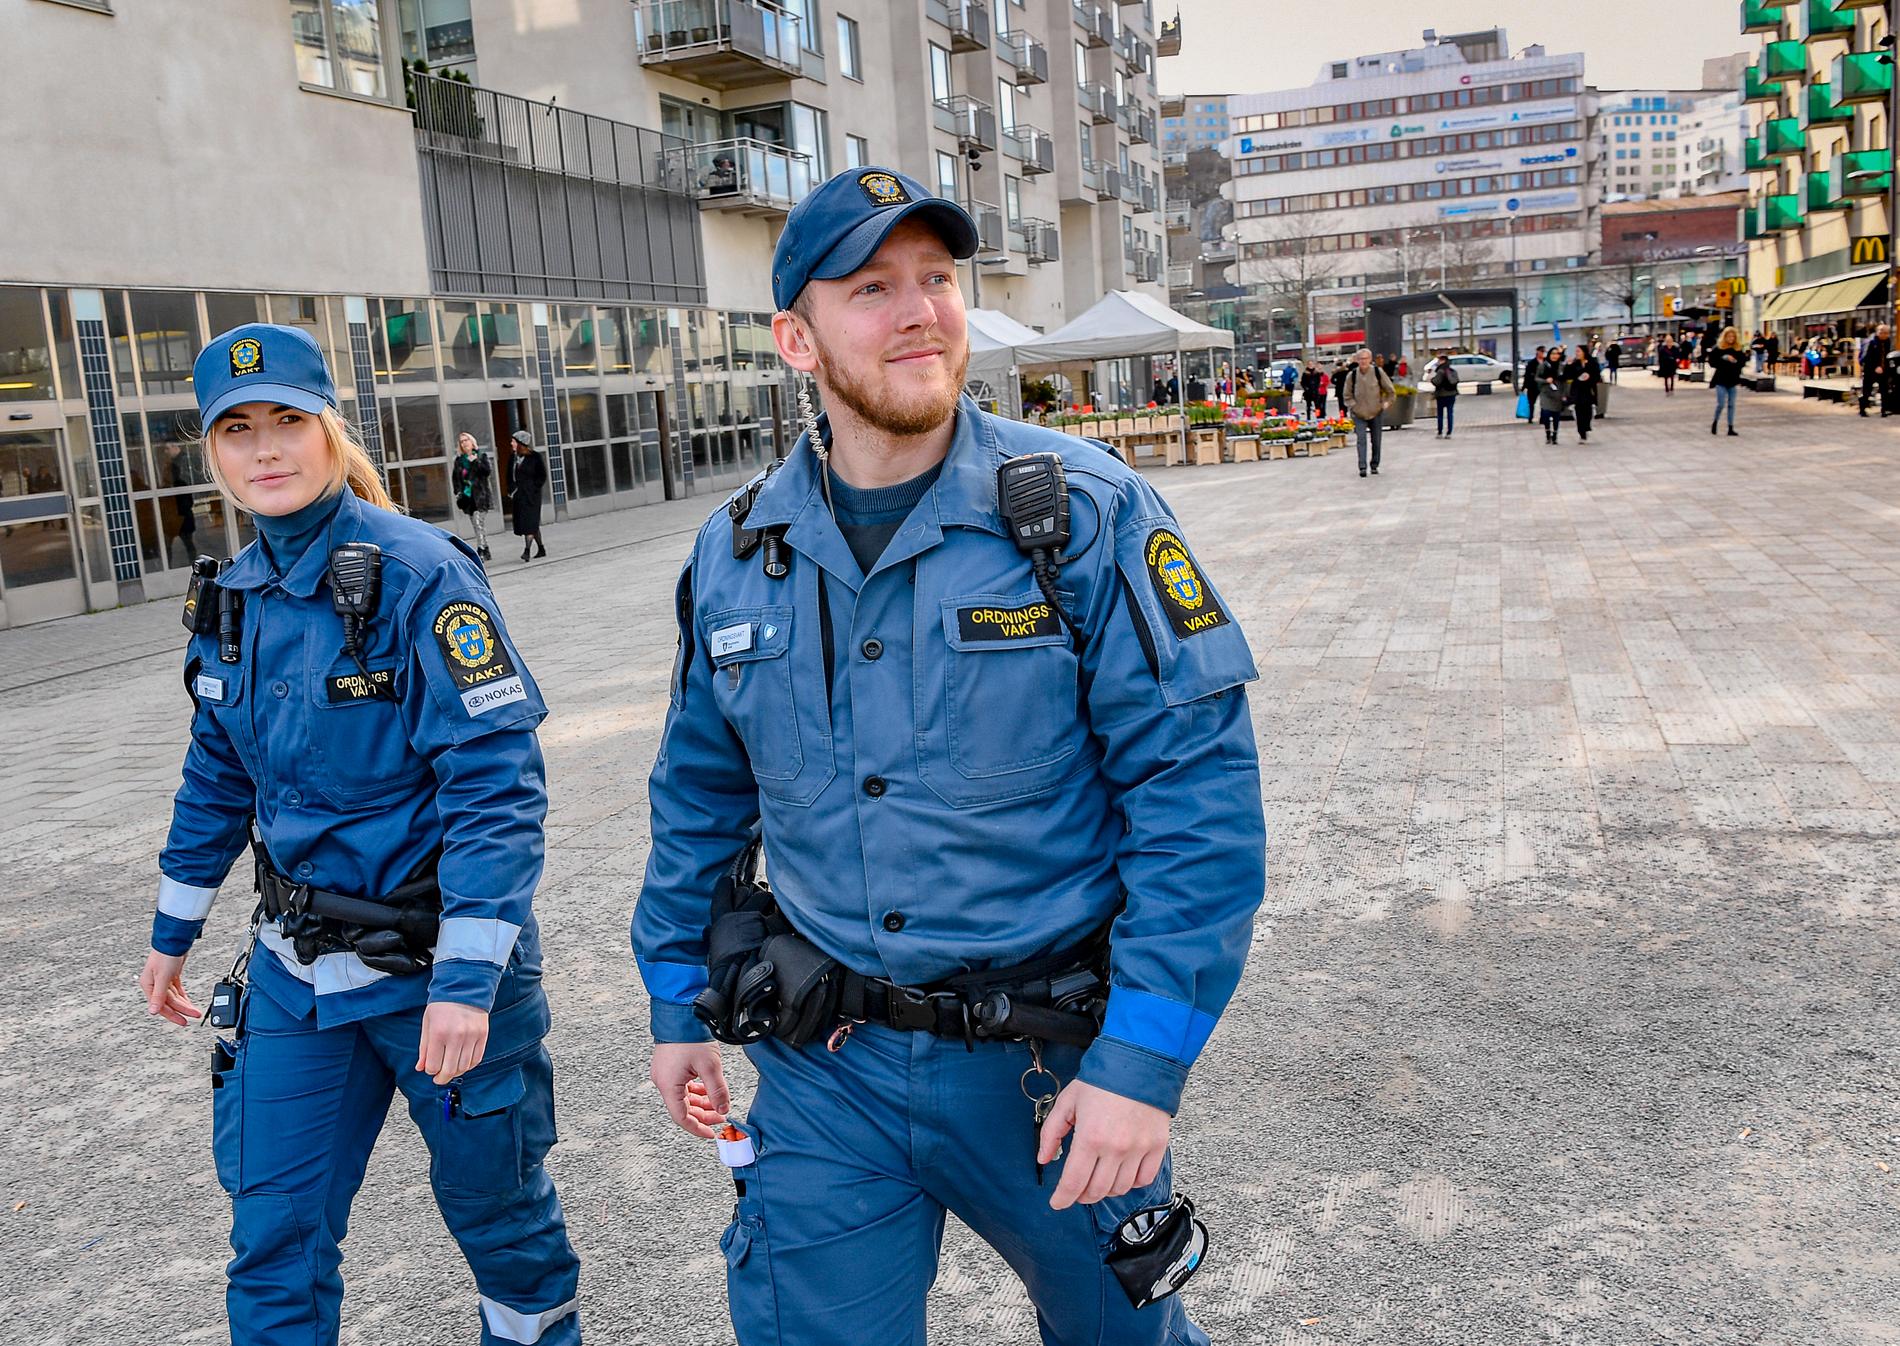 Mikaela och Eric från företaget Nokas patrullerar torget i Stockholmsstadsdelen Liljeholmen. Ordningsvakter och väktare utför allt fler uppdrag allmän plats och antalet gripanden genomförda av vakter fördubblades mellan 2017 och 2018.